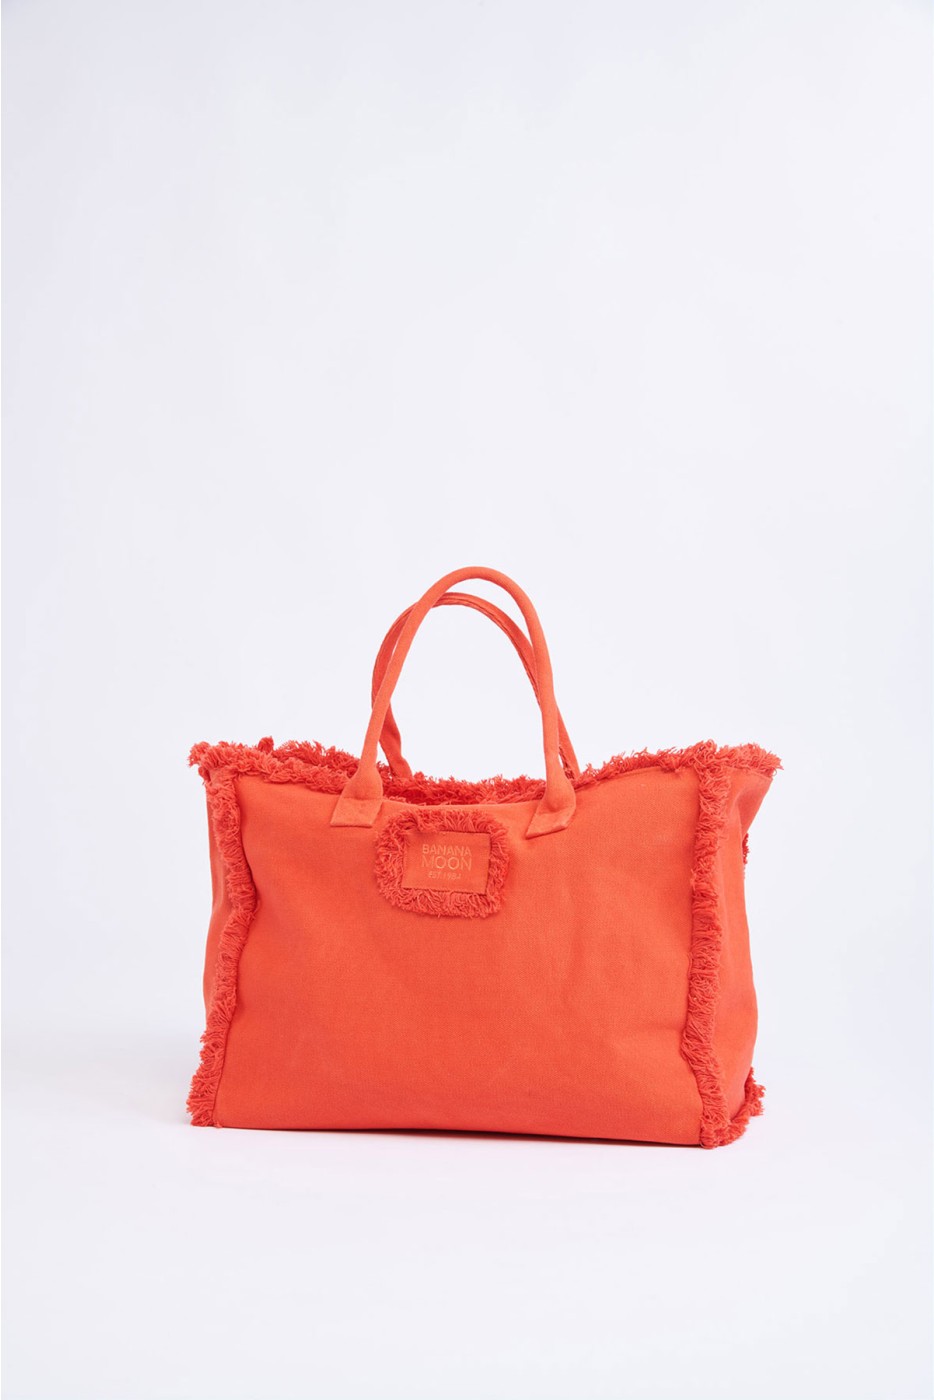 Tans Carlina orange bag | Banana Moon®